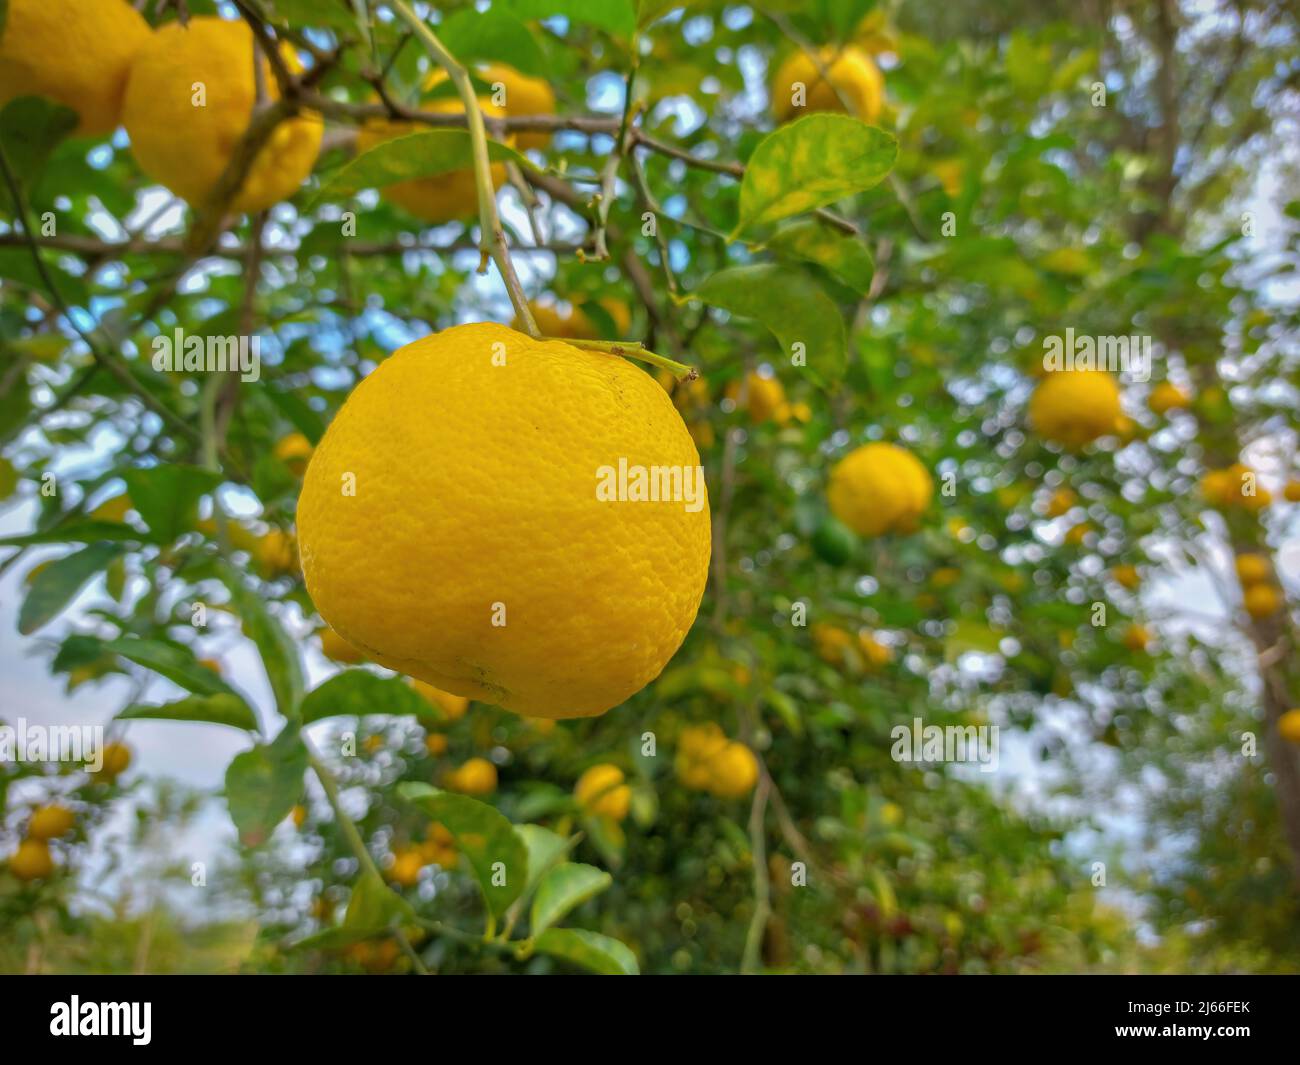 Lemons, ripe citrus fruits on the tree Stock Photo